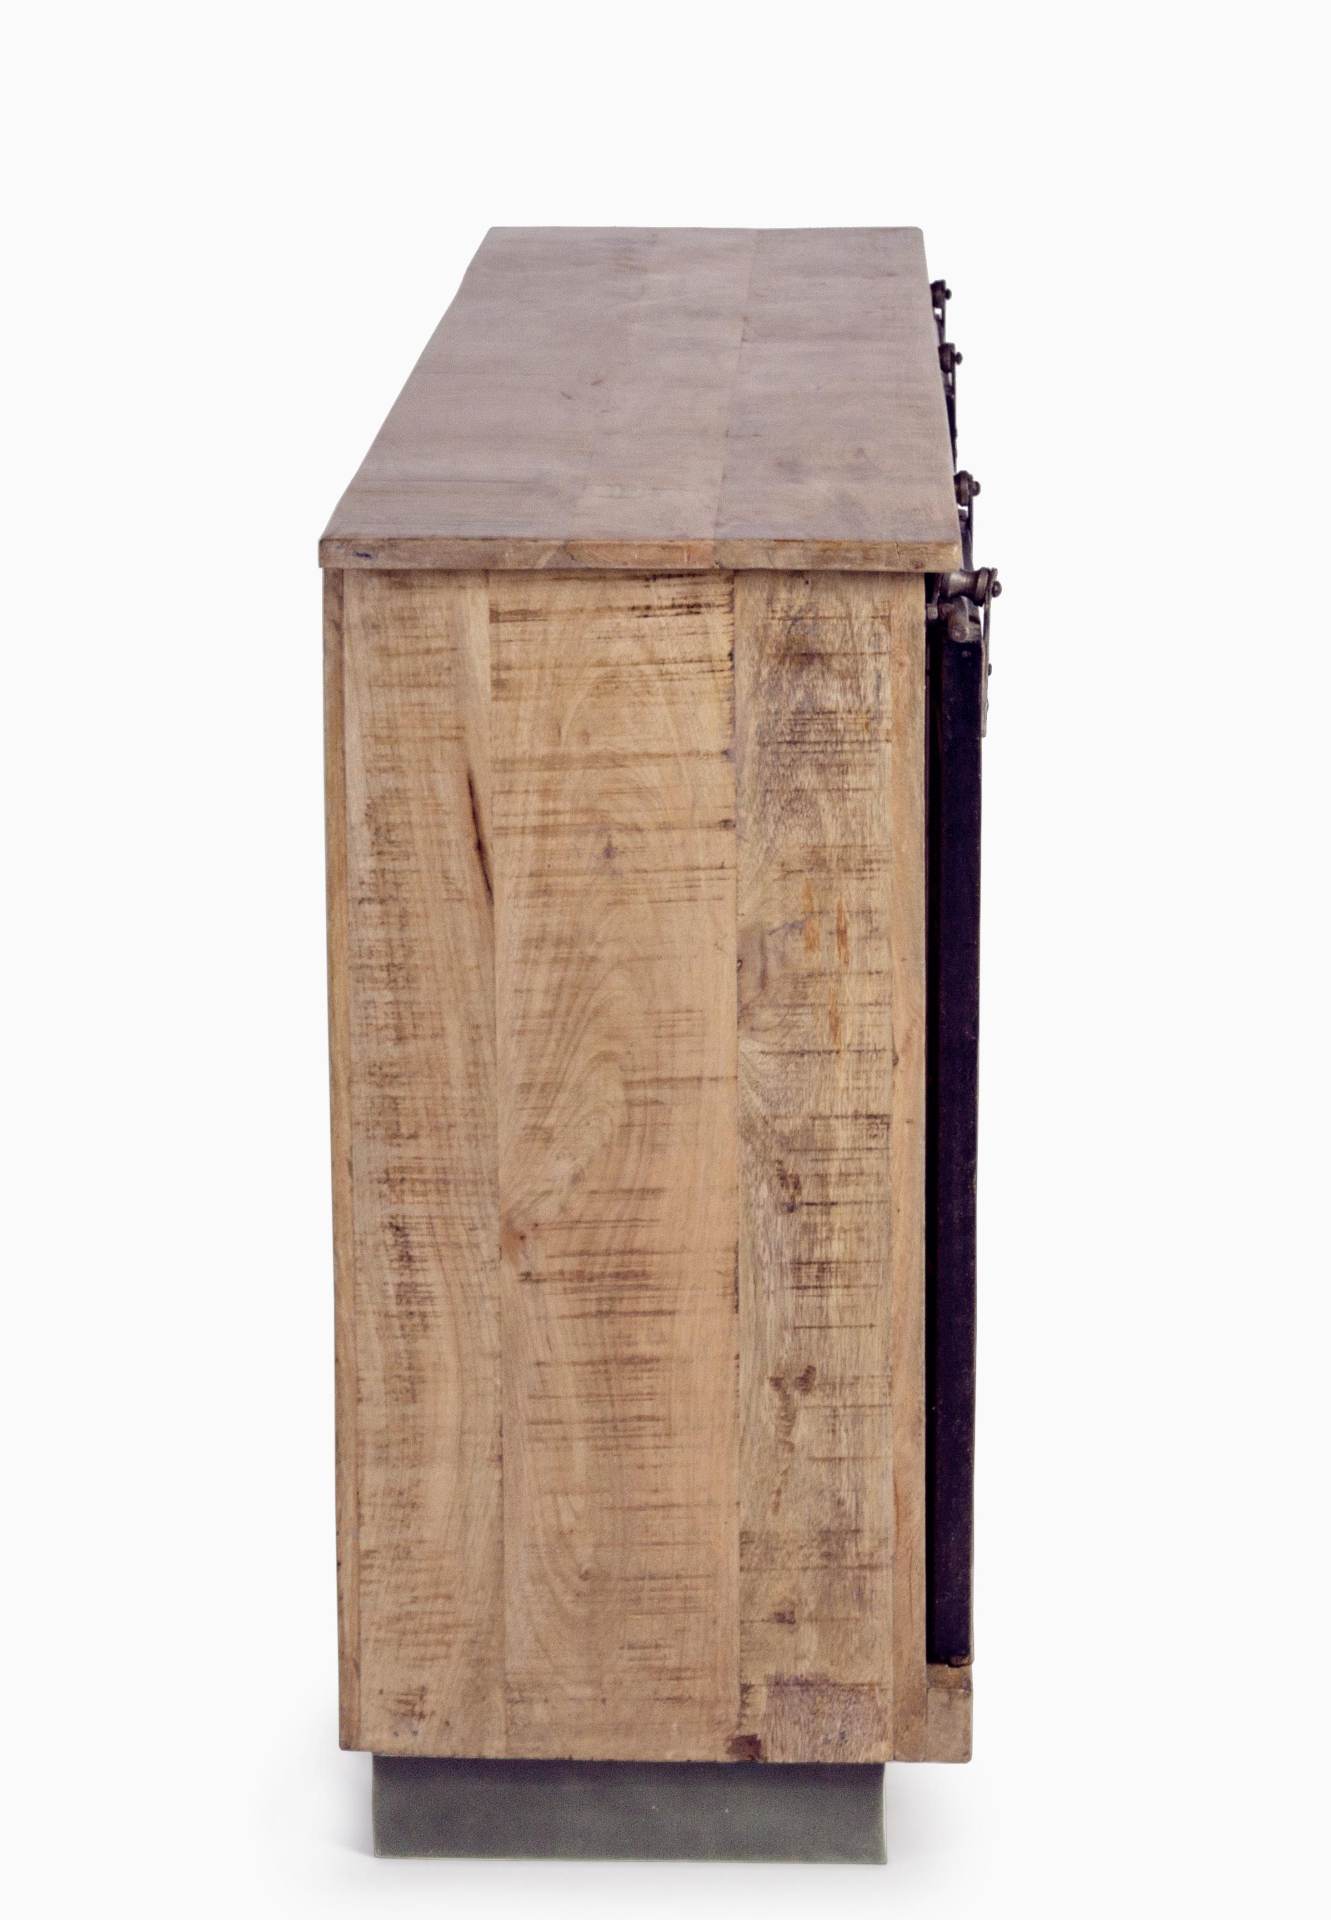 Das Sideboard Tudor überzeugt mit seinem klassischen Design. Gefertigt wurde es aus Mango-Holz, welches einen natürlichen Farbton besitzt. Das Gestell ist auch aus Mango-Holz. Das Sideboard verfügt über zwei Türen und drei Schubladen. Die Breite beträgt 1